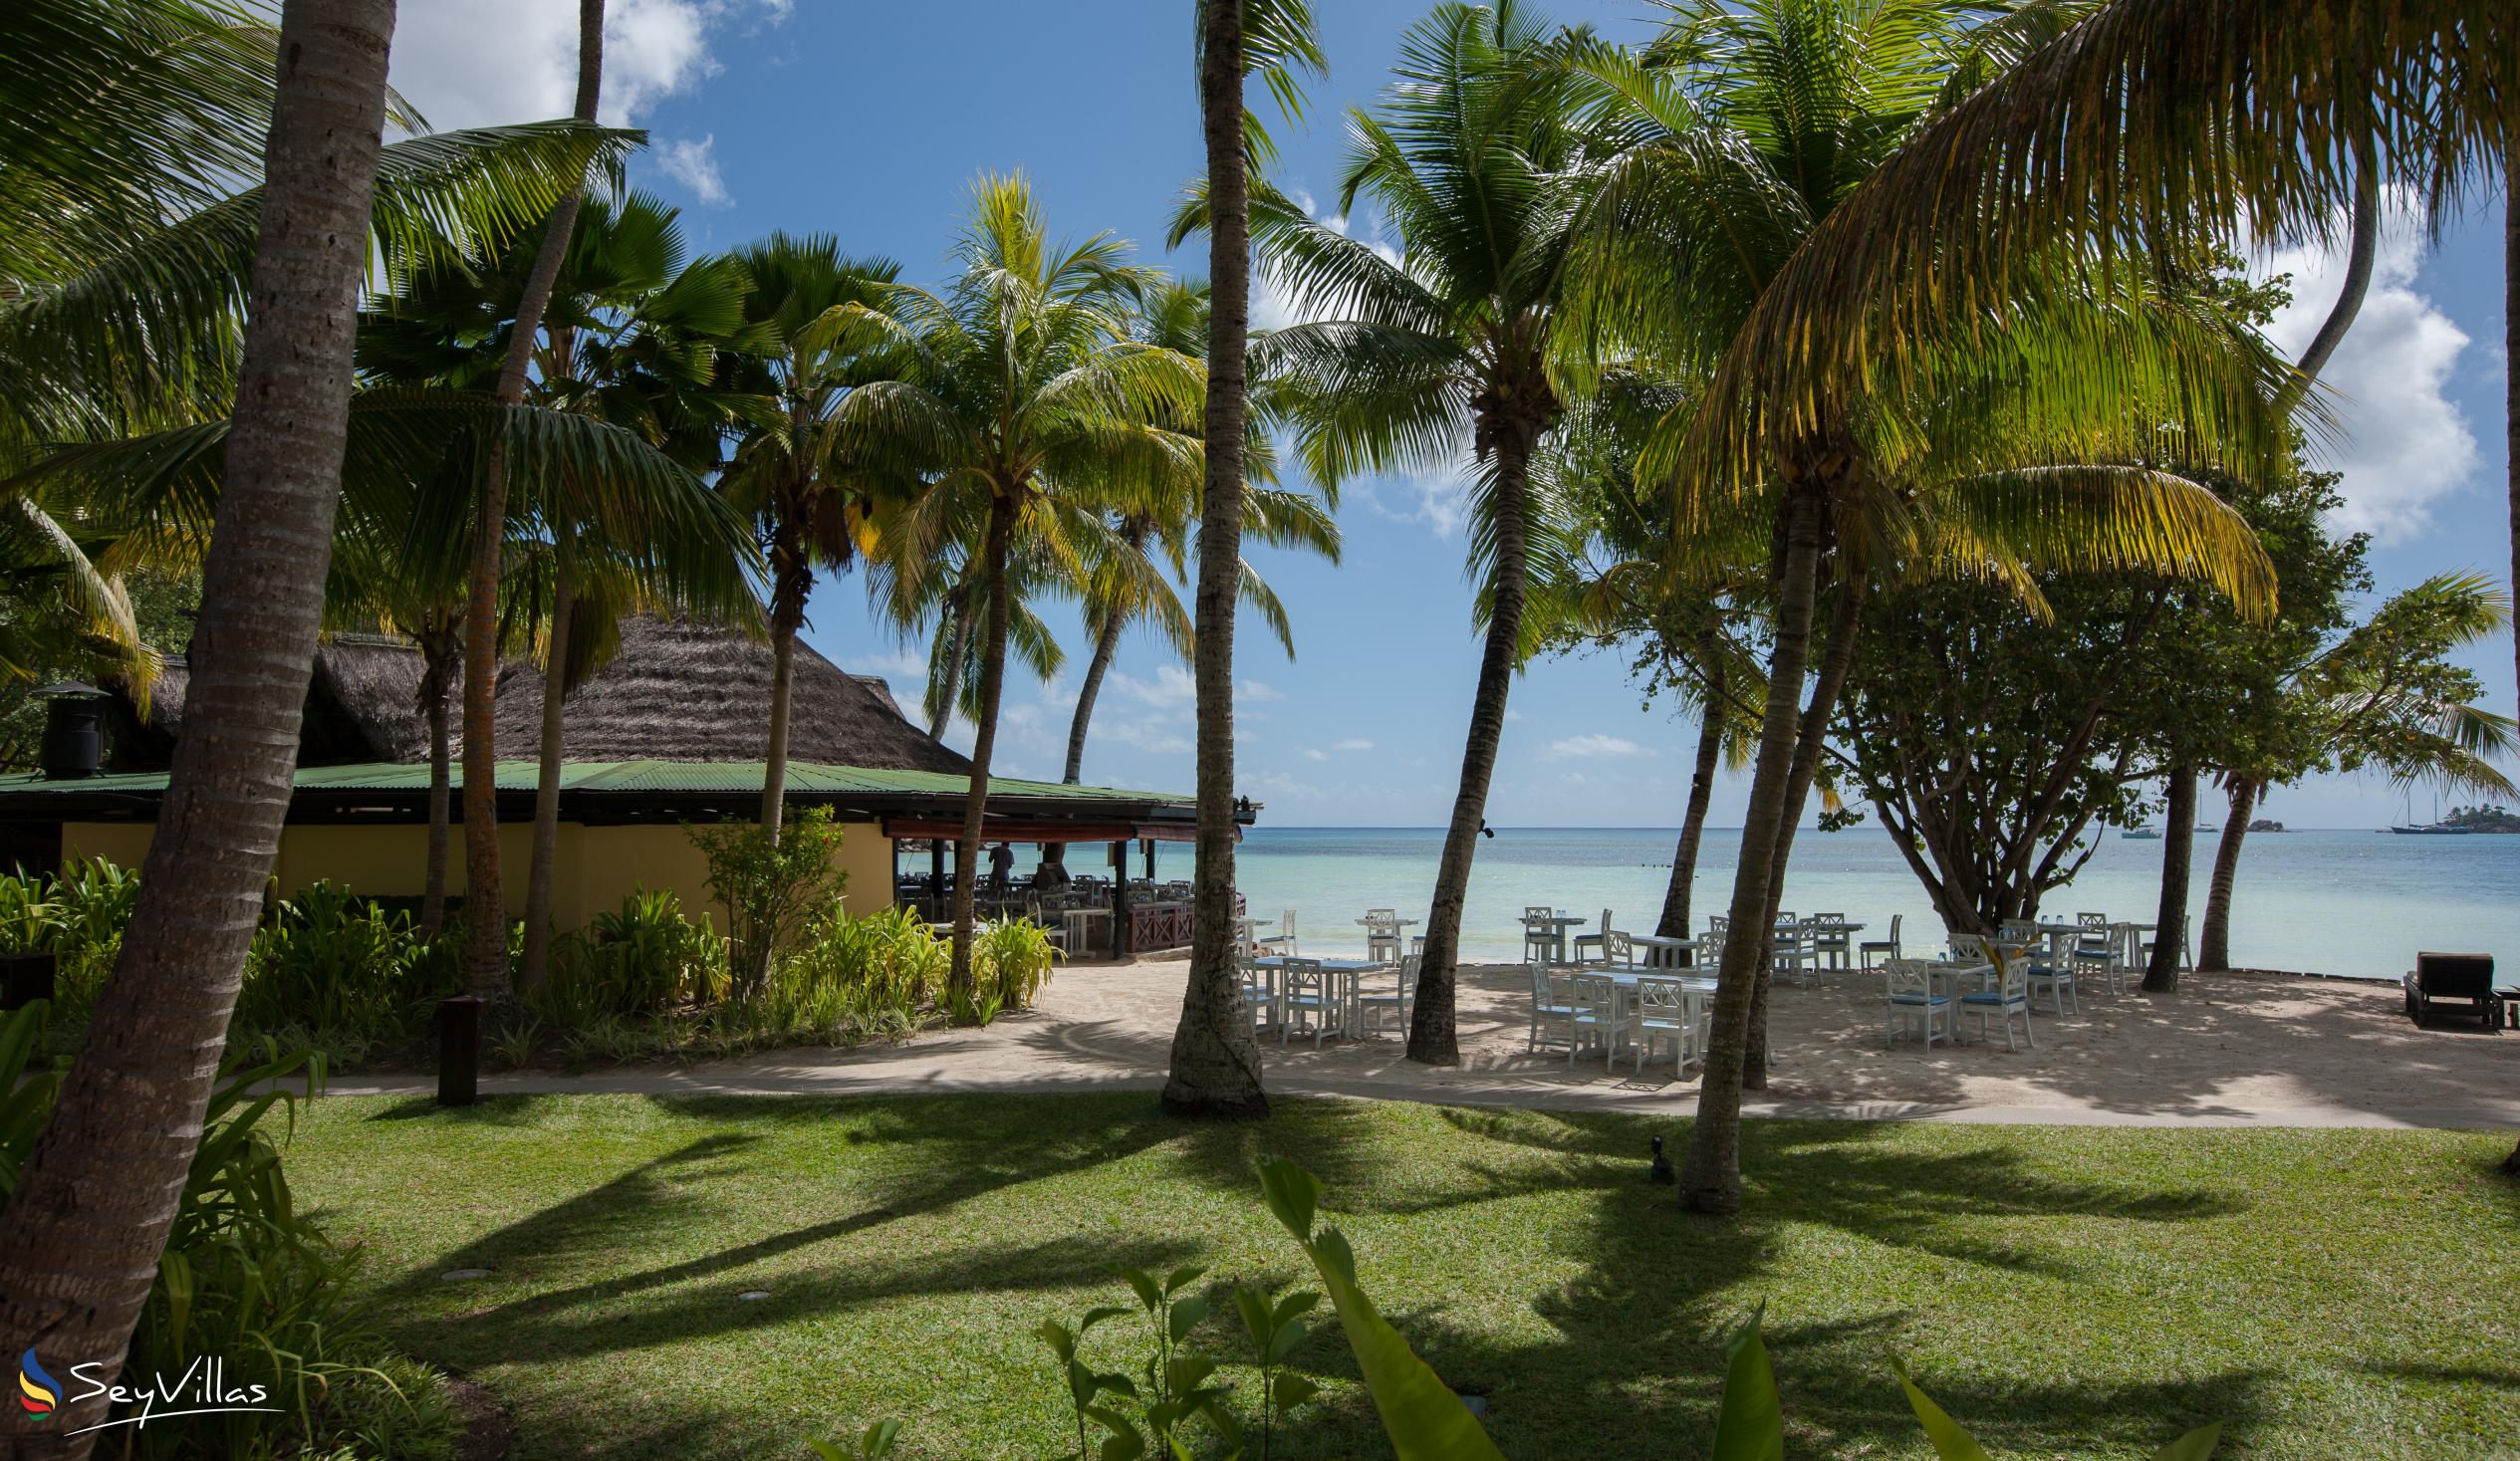 Foto 11: Paradise Sun Hotel - Aussenbereich - Praslin (Seychellen)